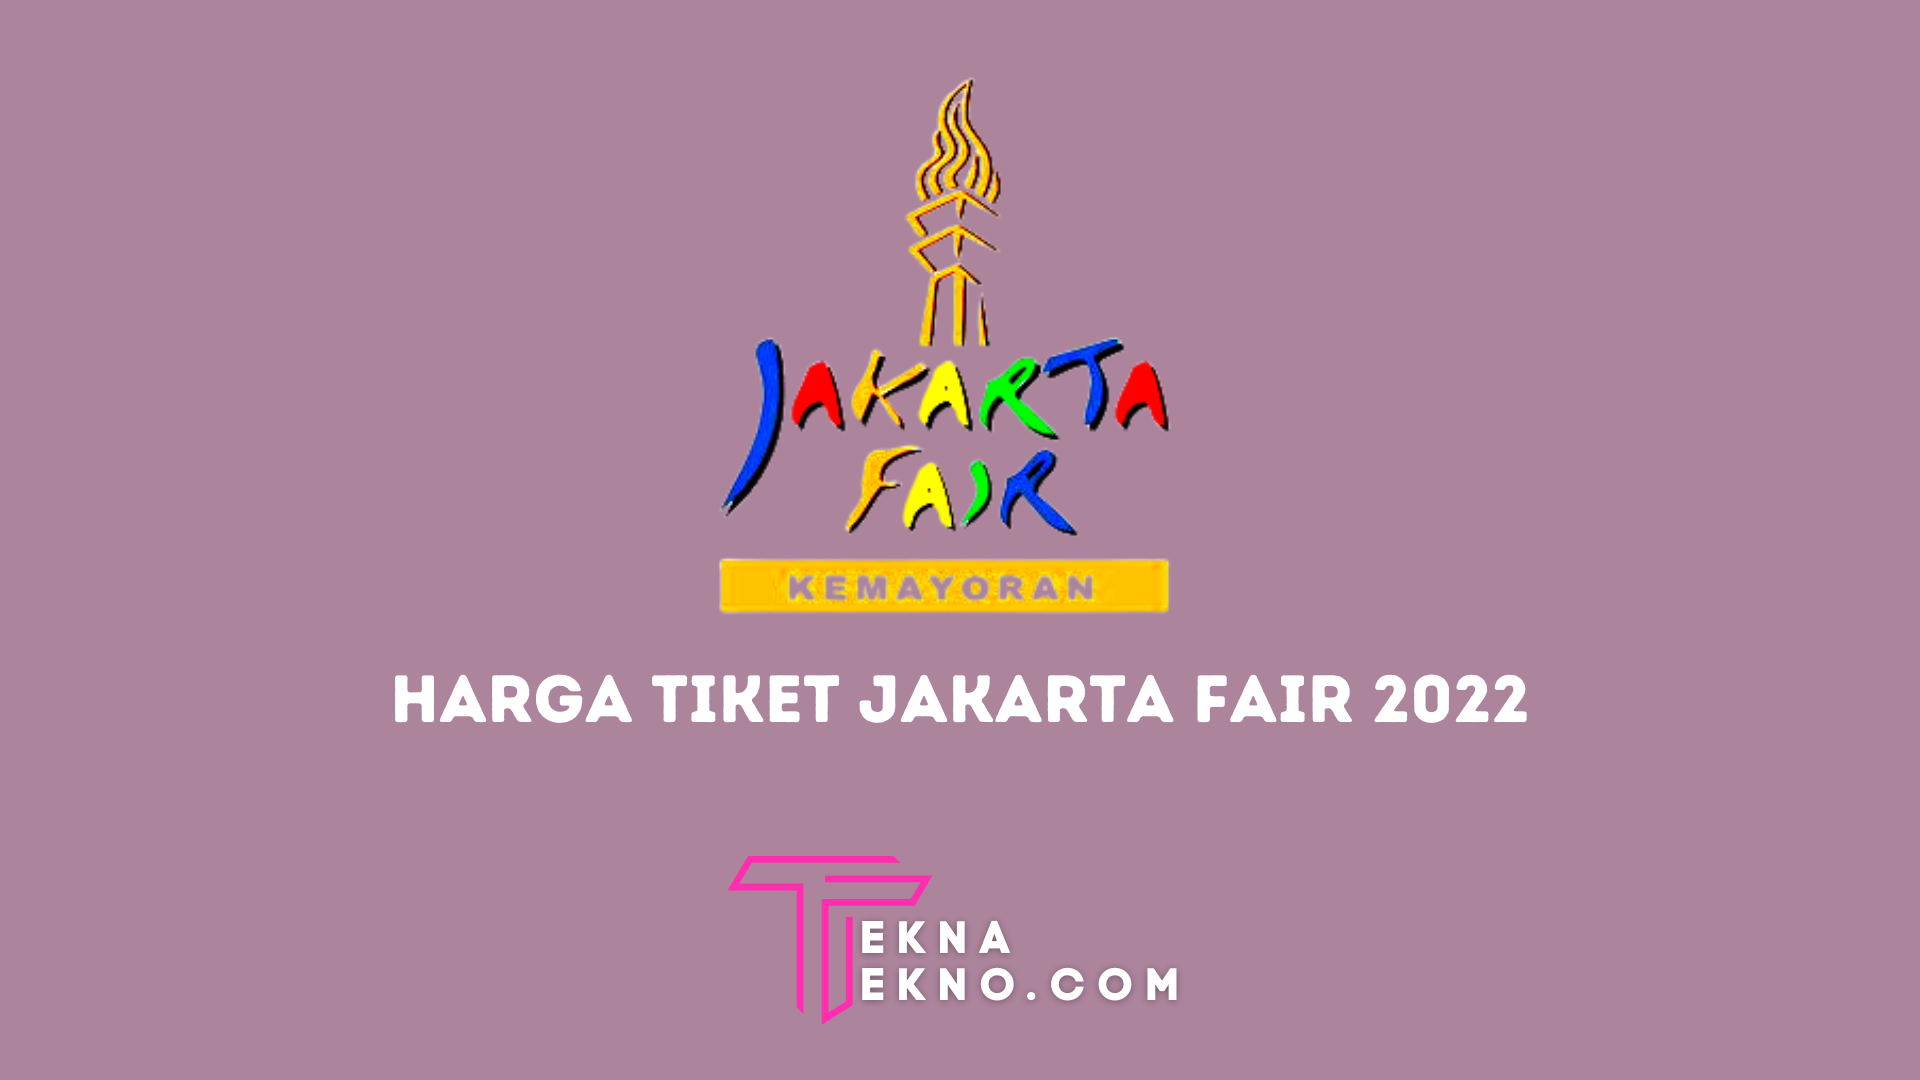 Harga Tiket Jakarta Fair 2022 Mulai Rp30 Ribu, Ini Daftarnya